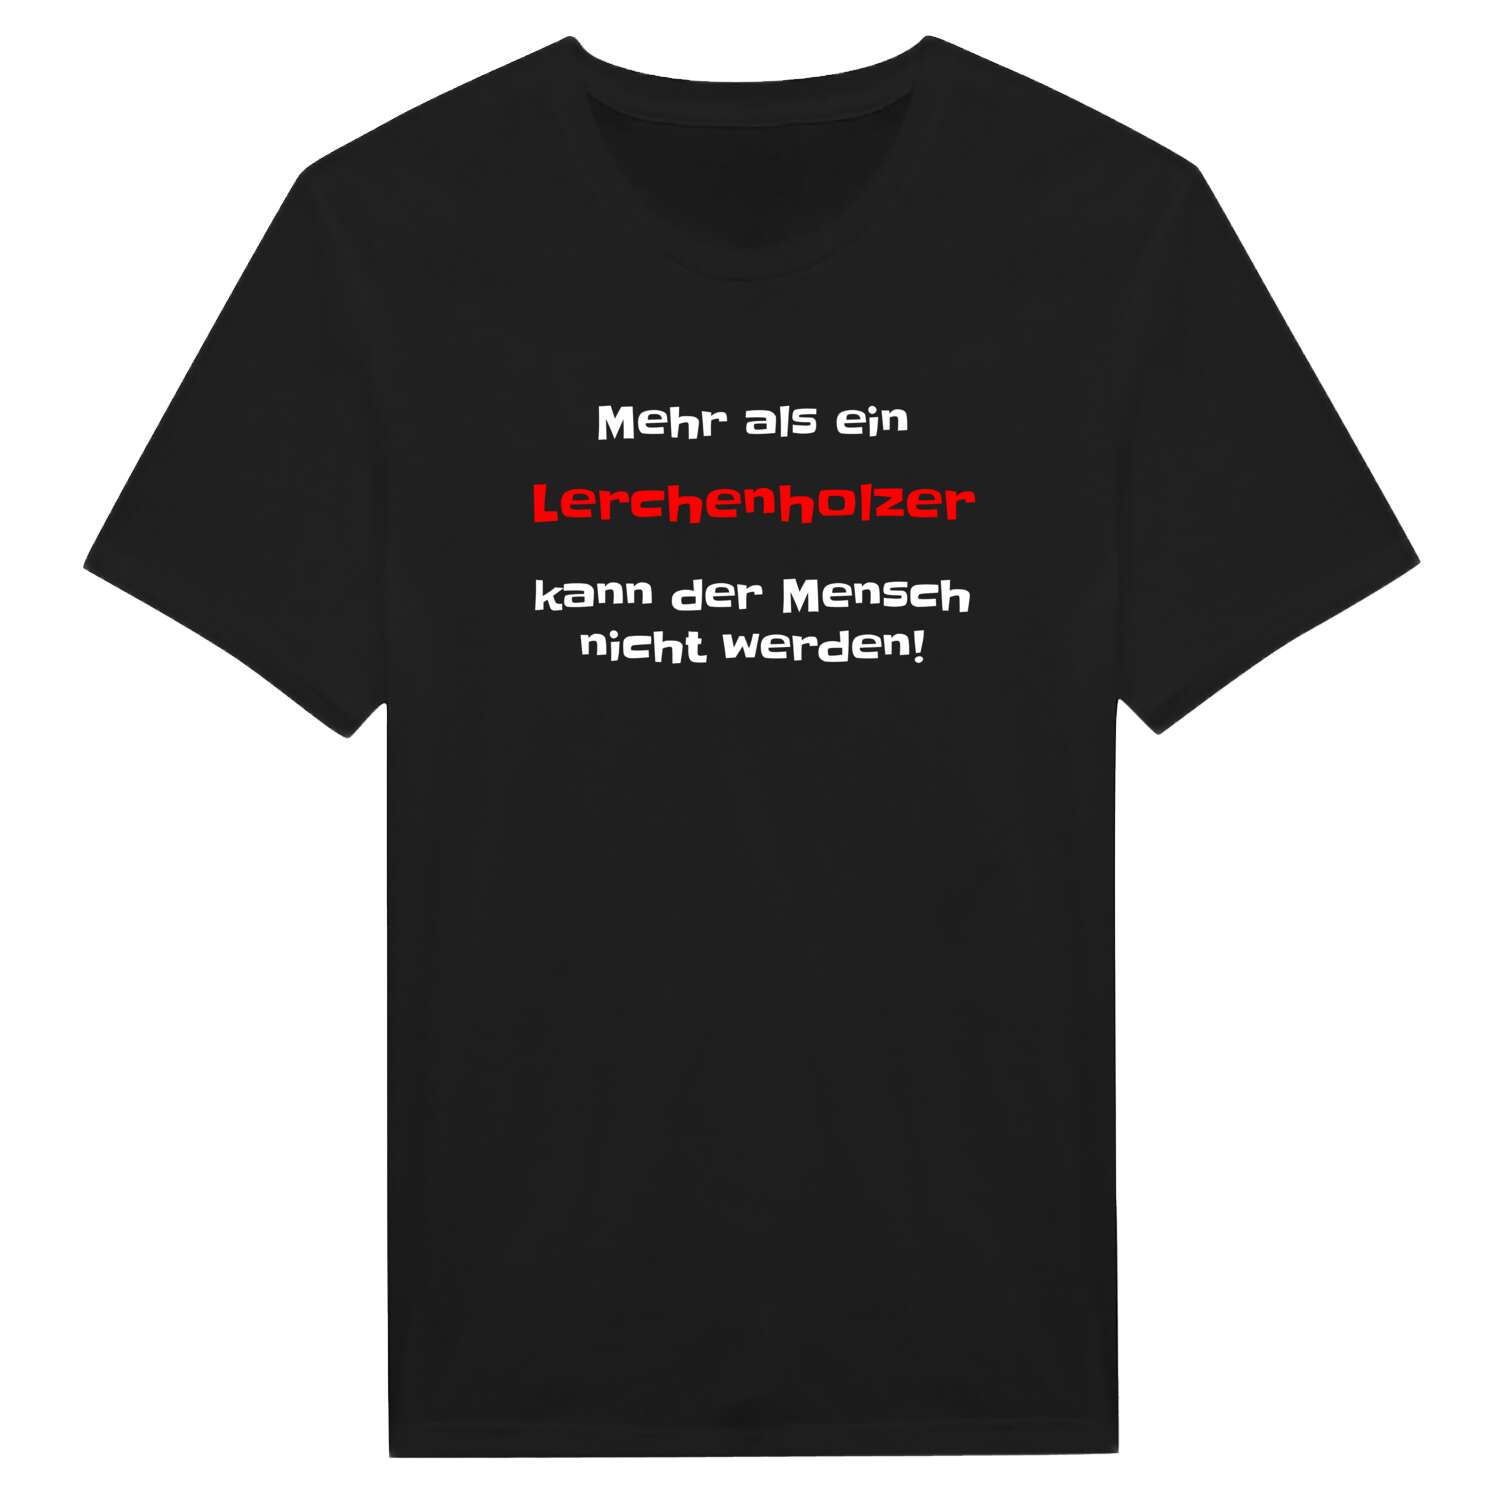 Lerchenholz T-Shirt »Mehr als ein«